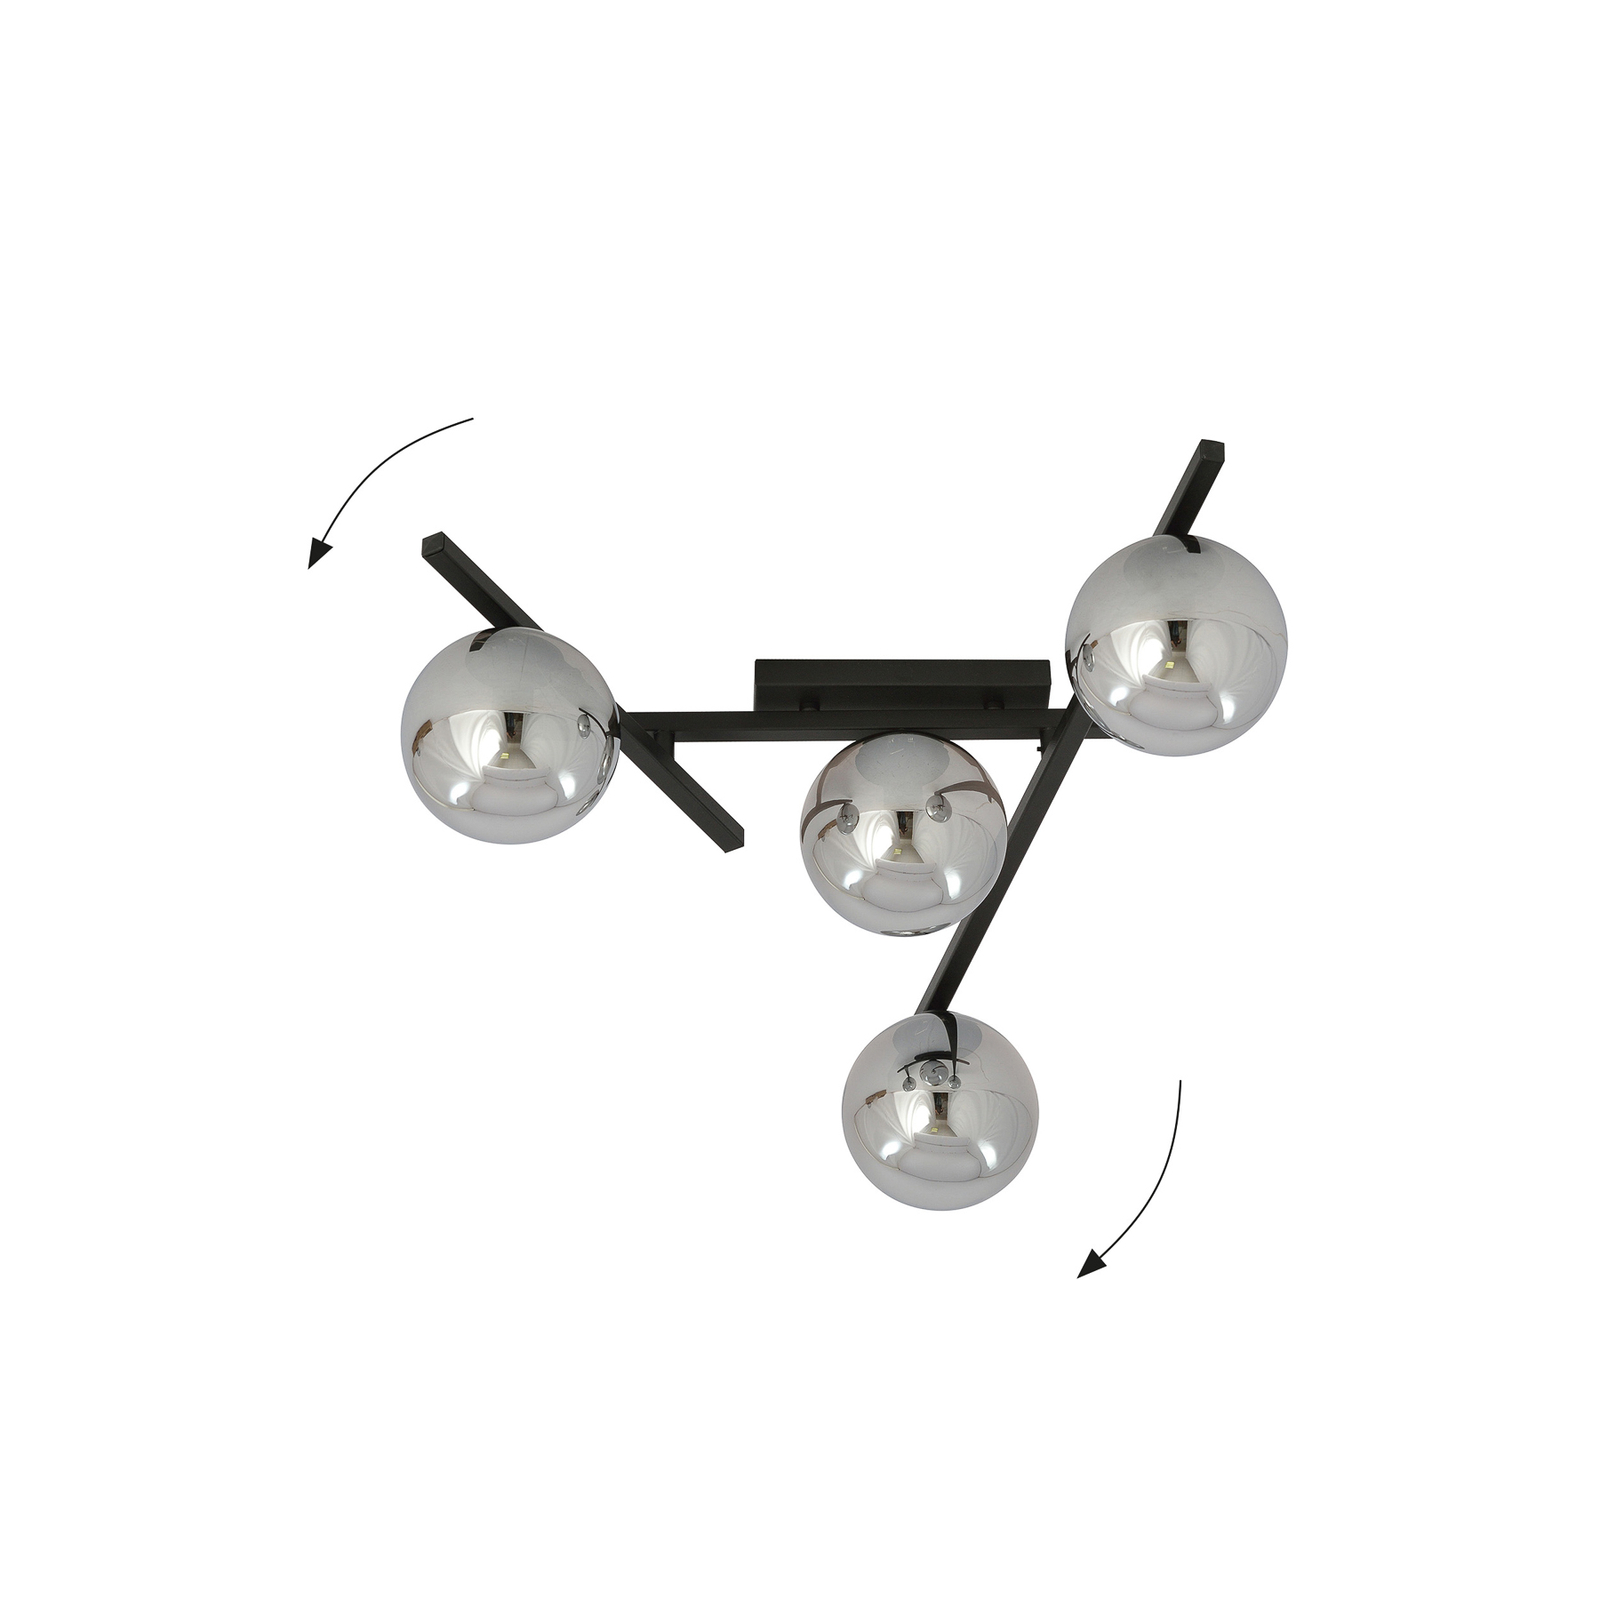 Deckenlampe Smart, schwarz/grafit, 4-flammig